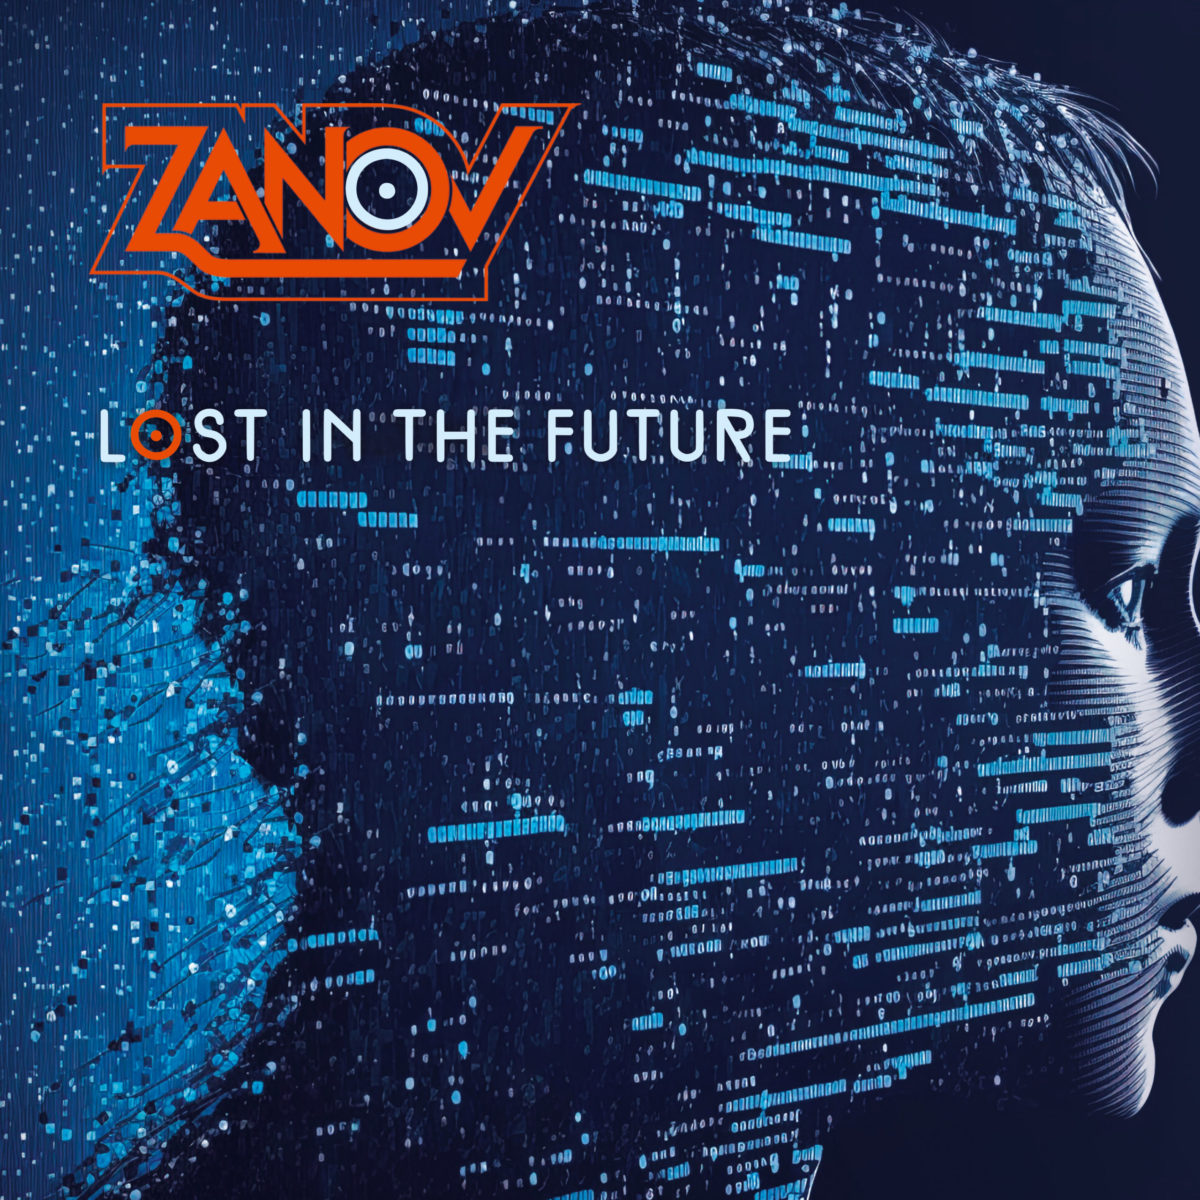 Zanov-Lost in the Future. CD cover front